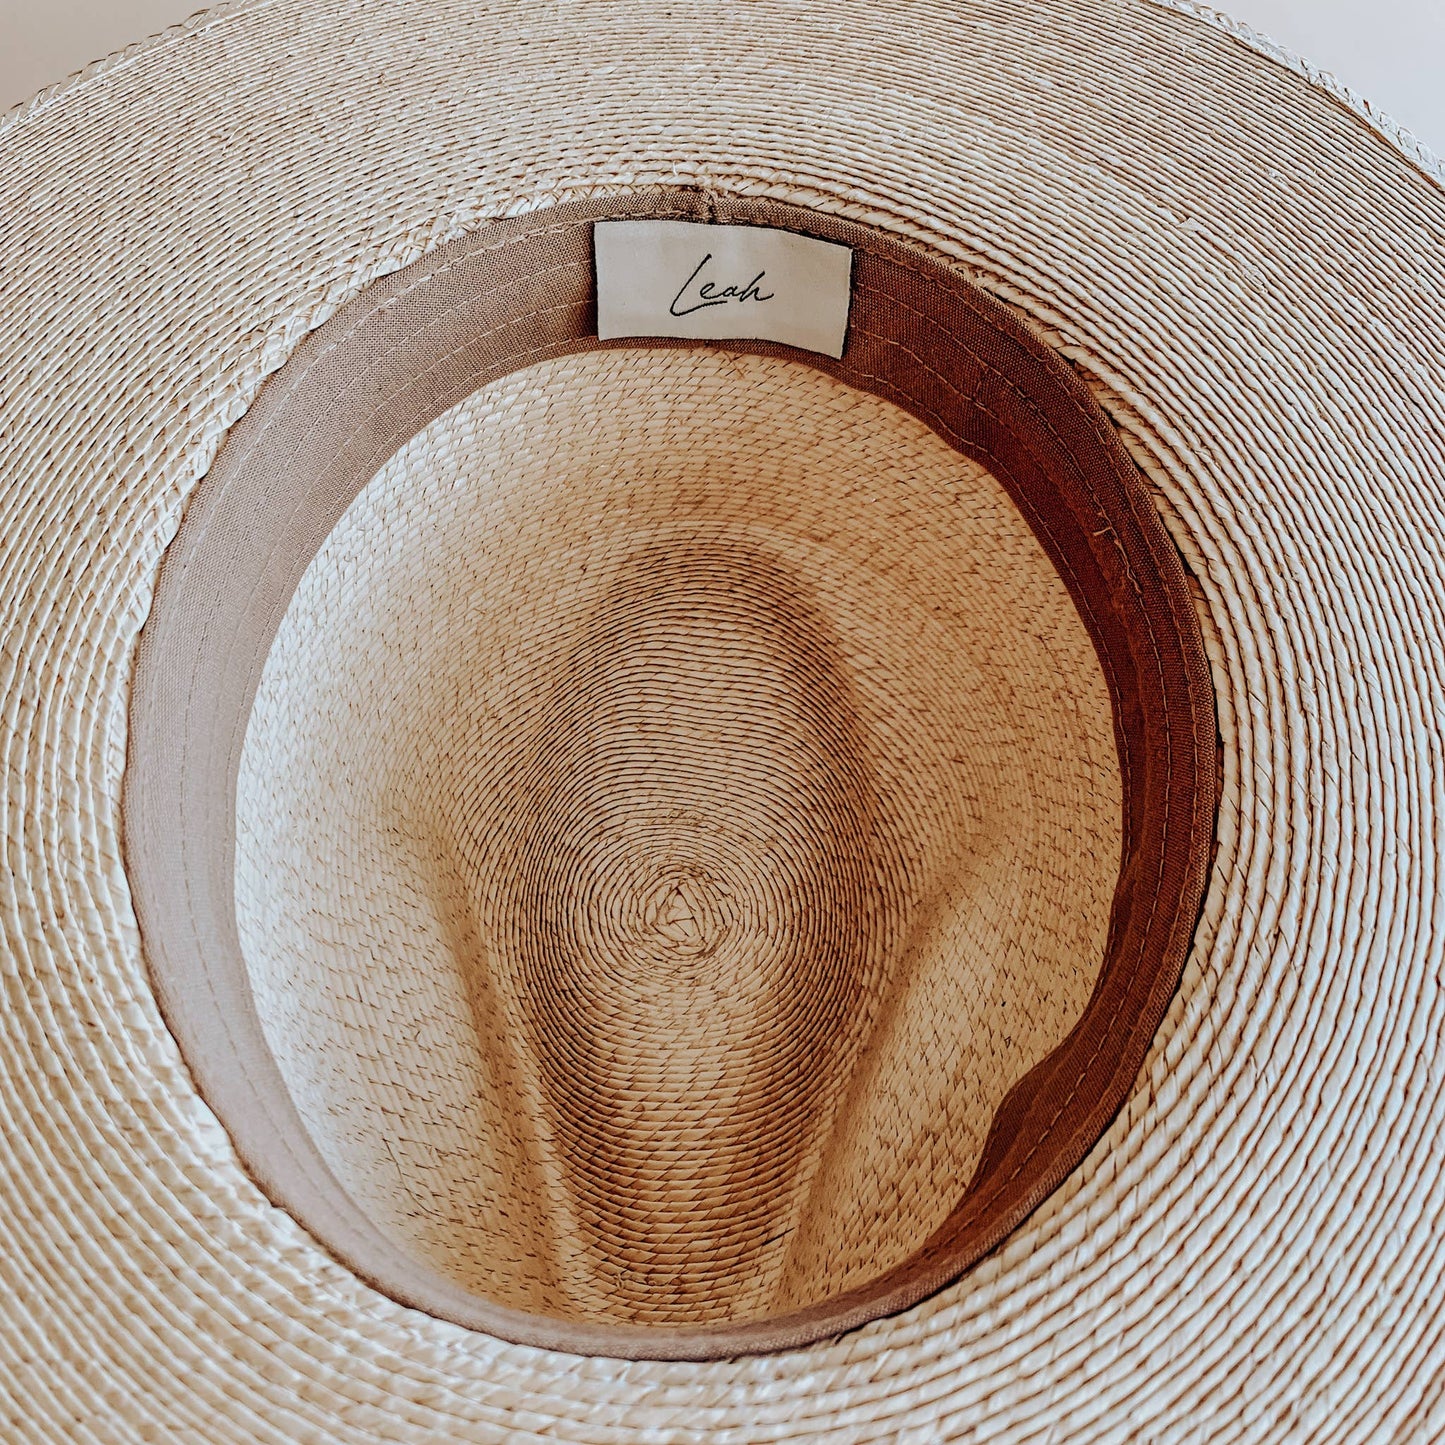 Bo Rancher Straw Hat Medium